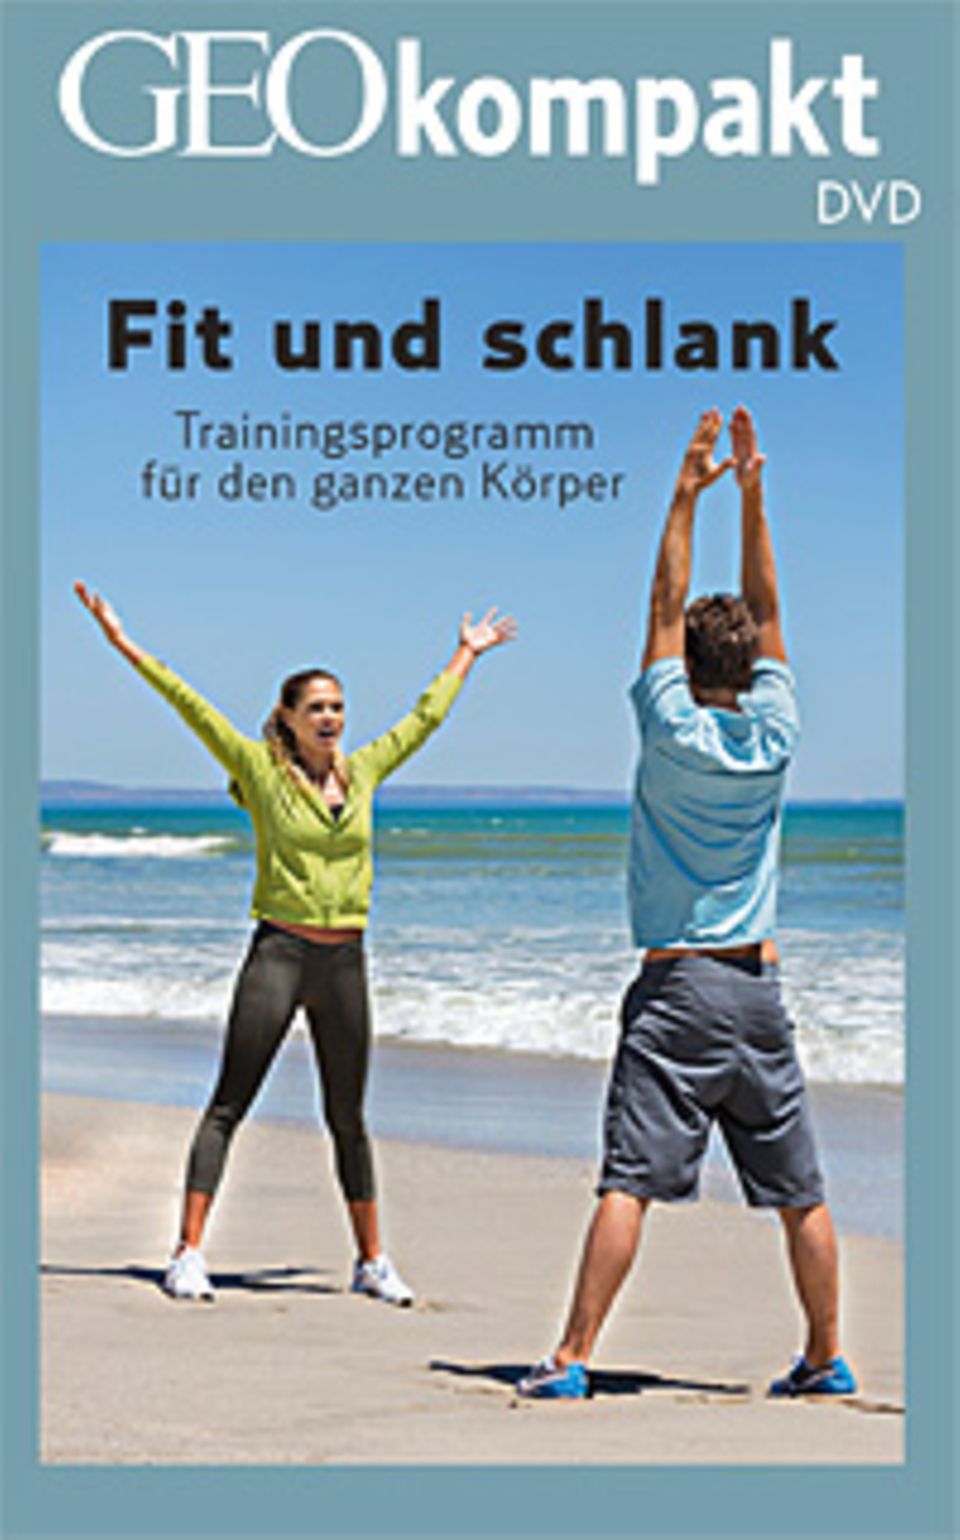 Sport: GEOkompakt Nr. 46 "Sport" ist auch mit DVD erhältlich